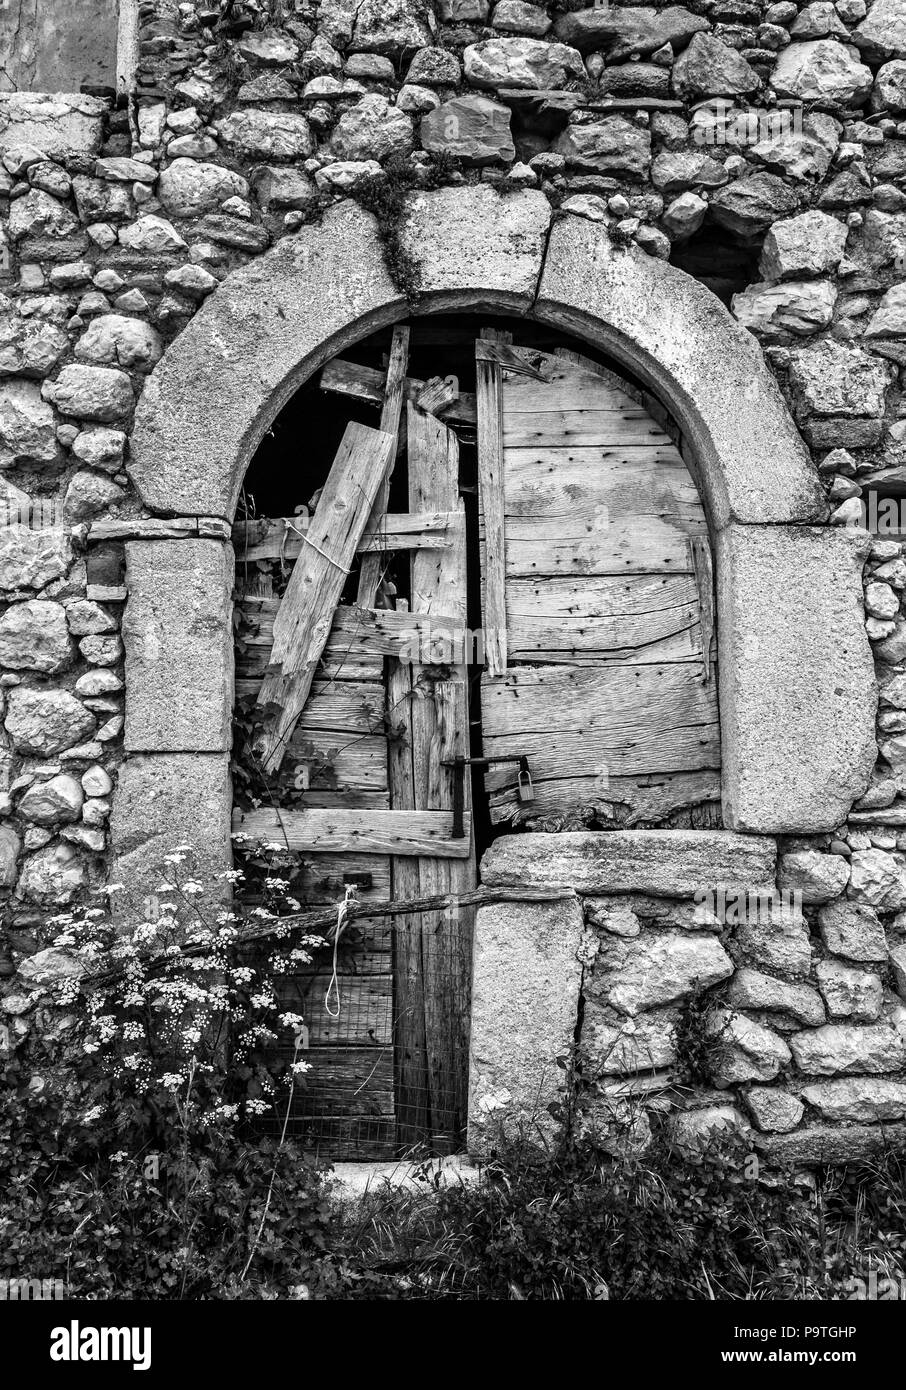 Magasin de porte médiéval, ancienne salle, province de pescara, Abruzzes, Italie,Europe Banque D'Images